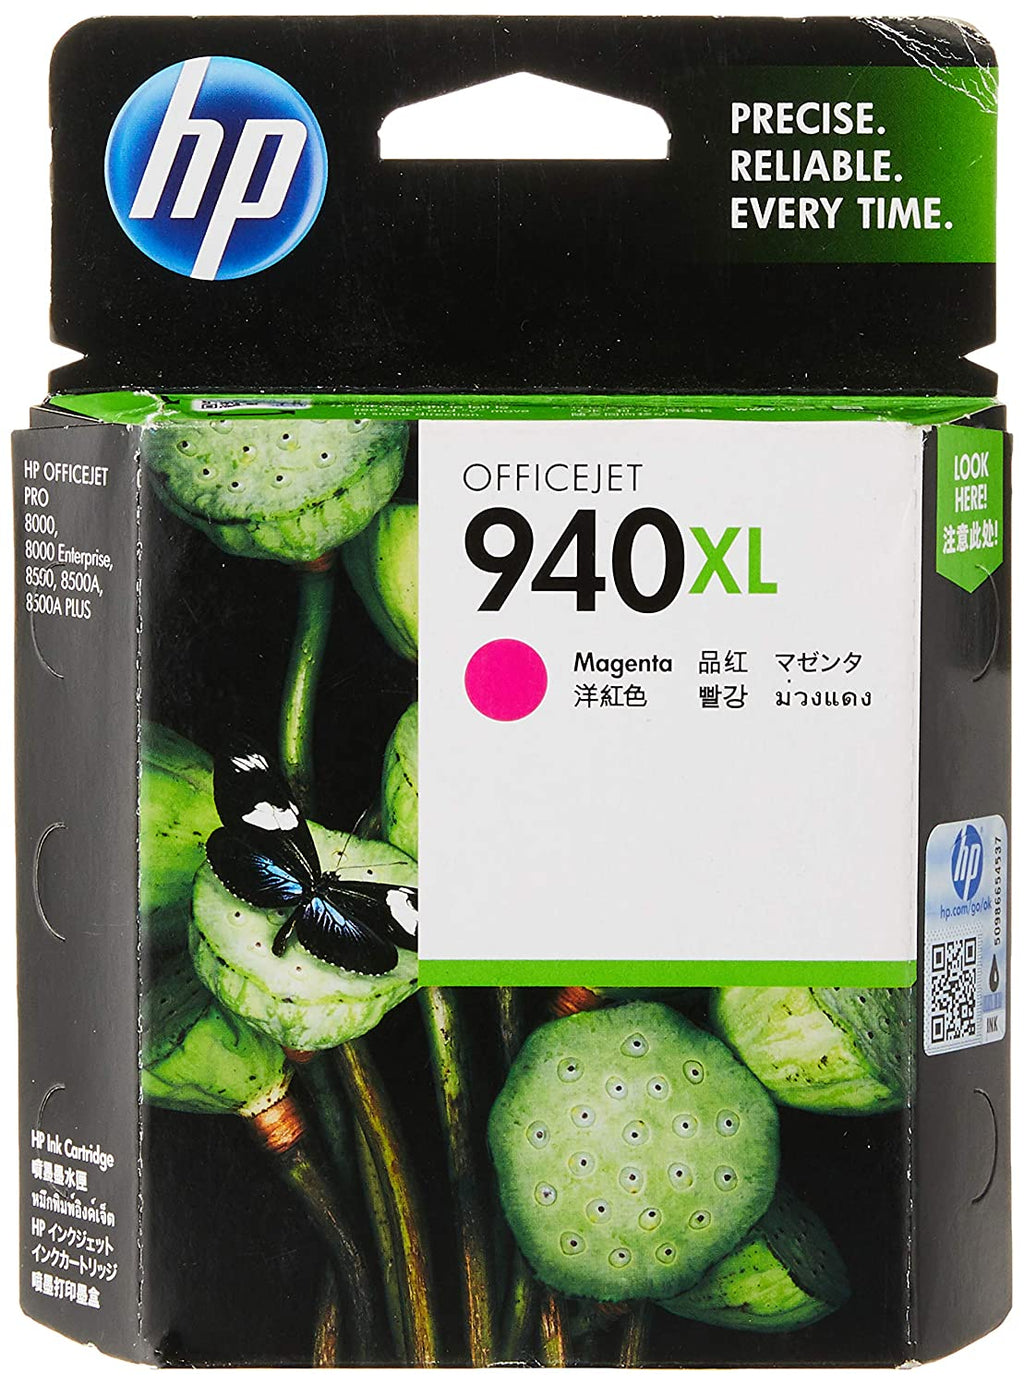 HP 940XL मैजेंटा ऑफिसजेट इंक कार्ट्रिज 2 का पैक